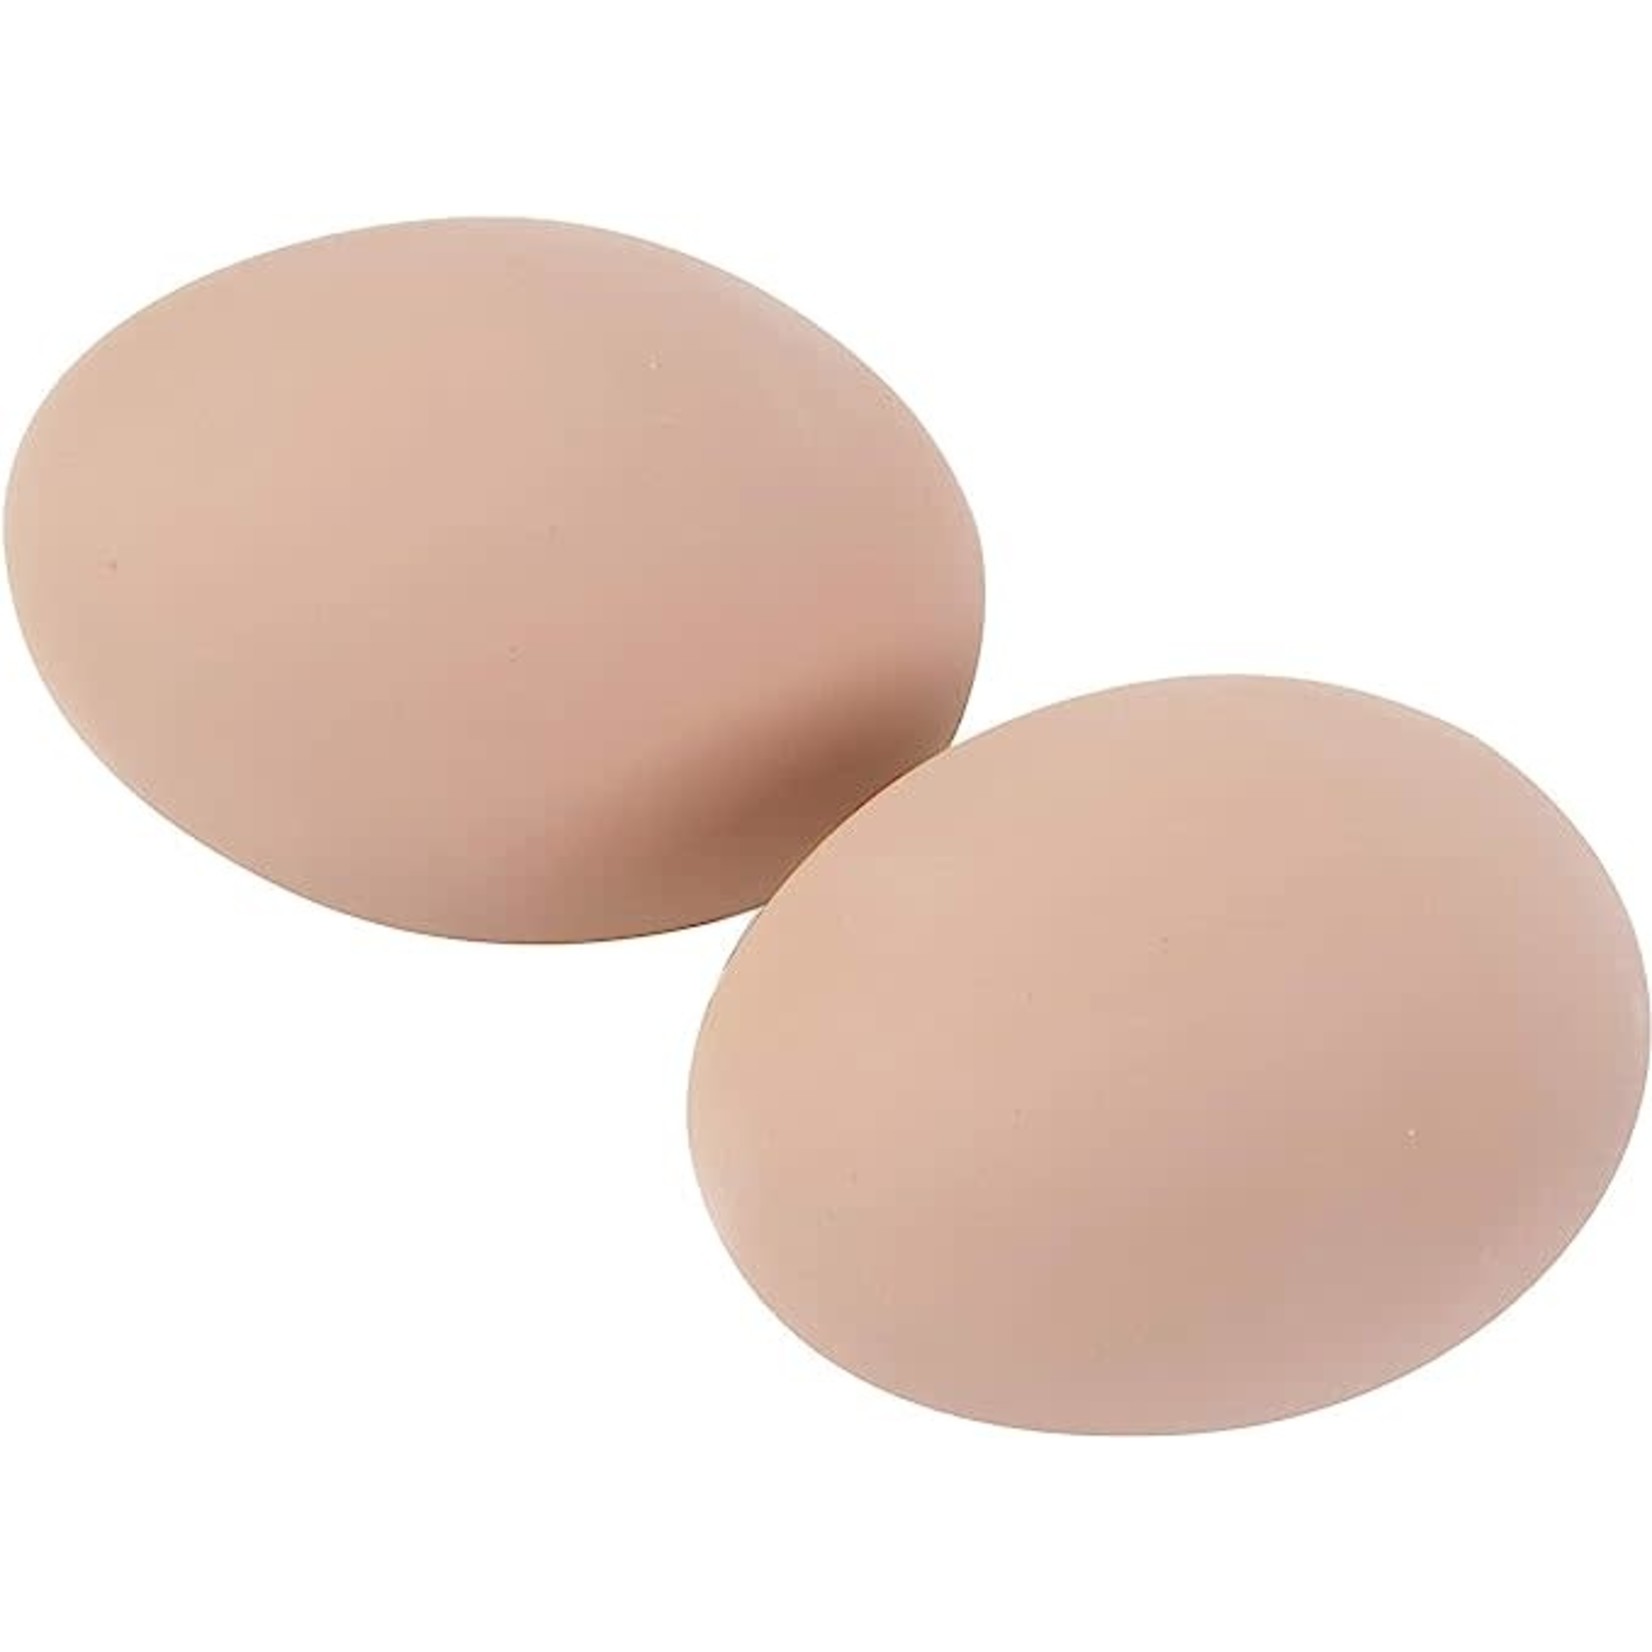 MILLER MFG Ceramic Poultry Nest Eggs - Brown